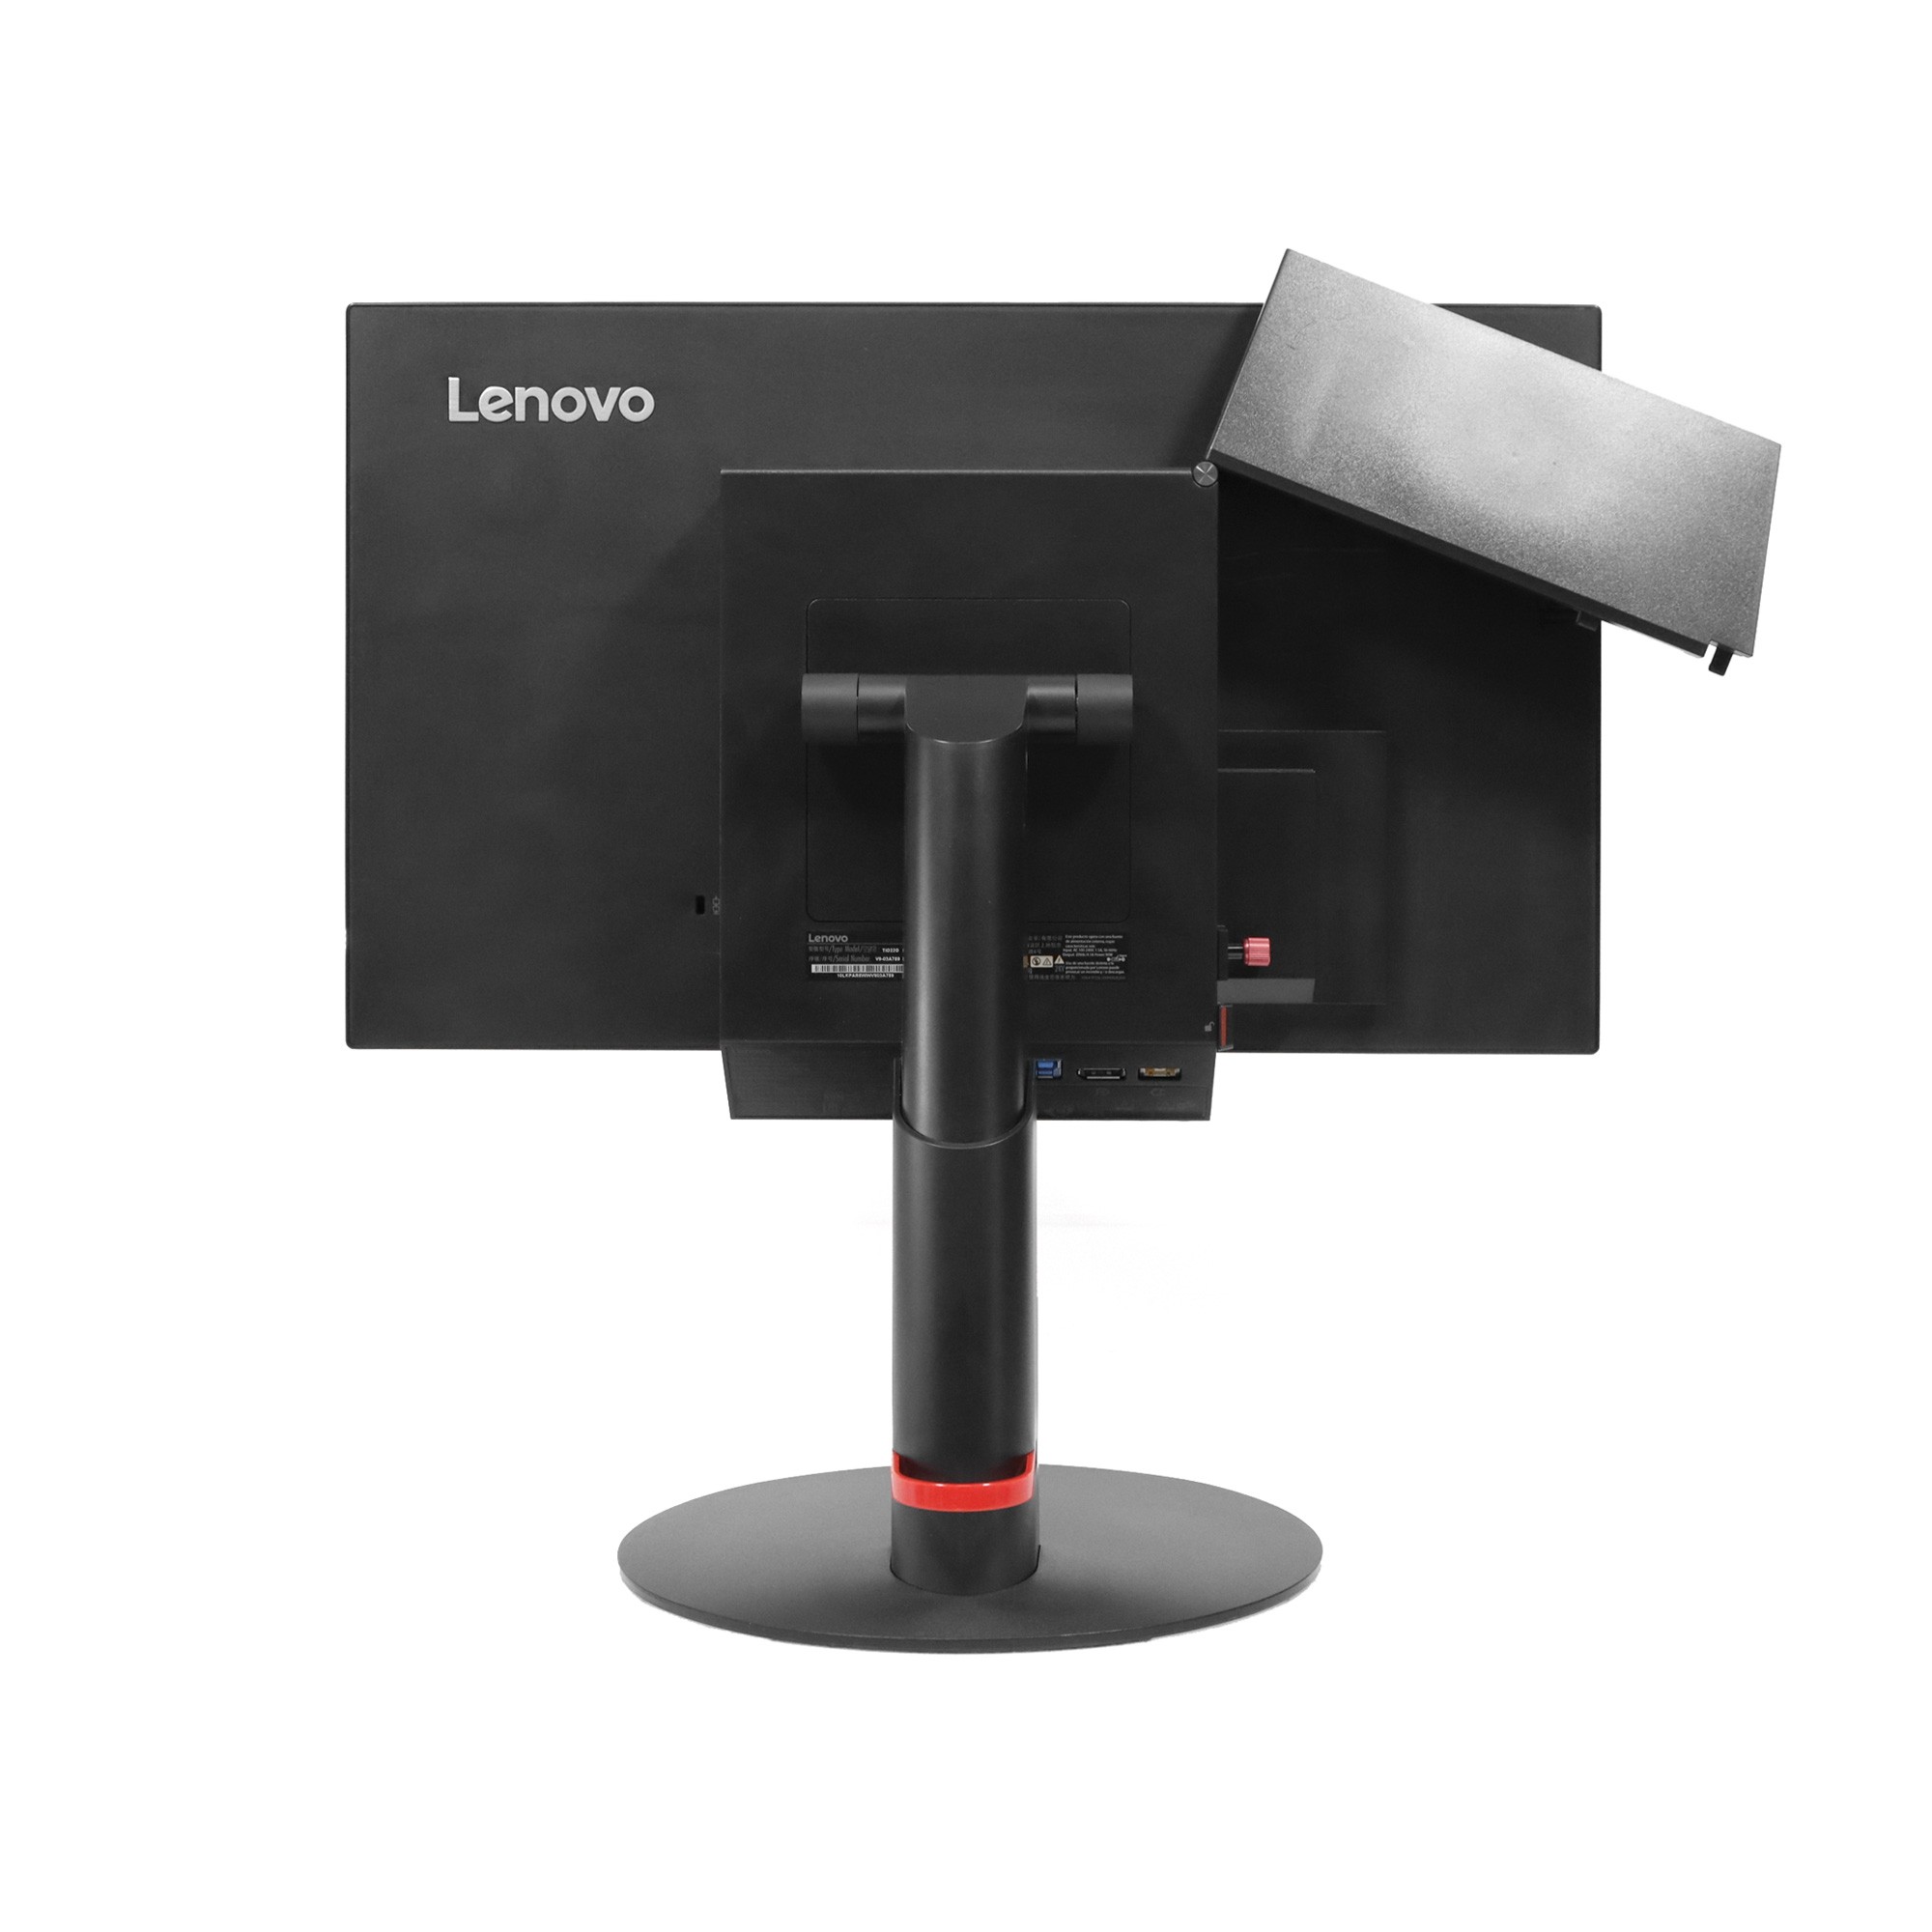 Pantalla portátil Lenovo para todos los modelos de Lenovo. Lista pantallas